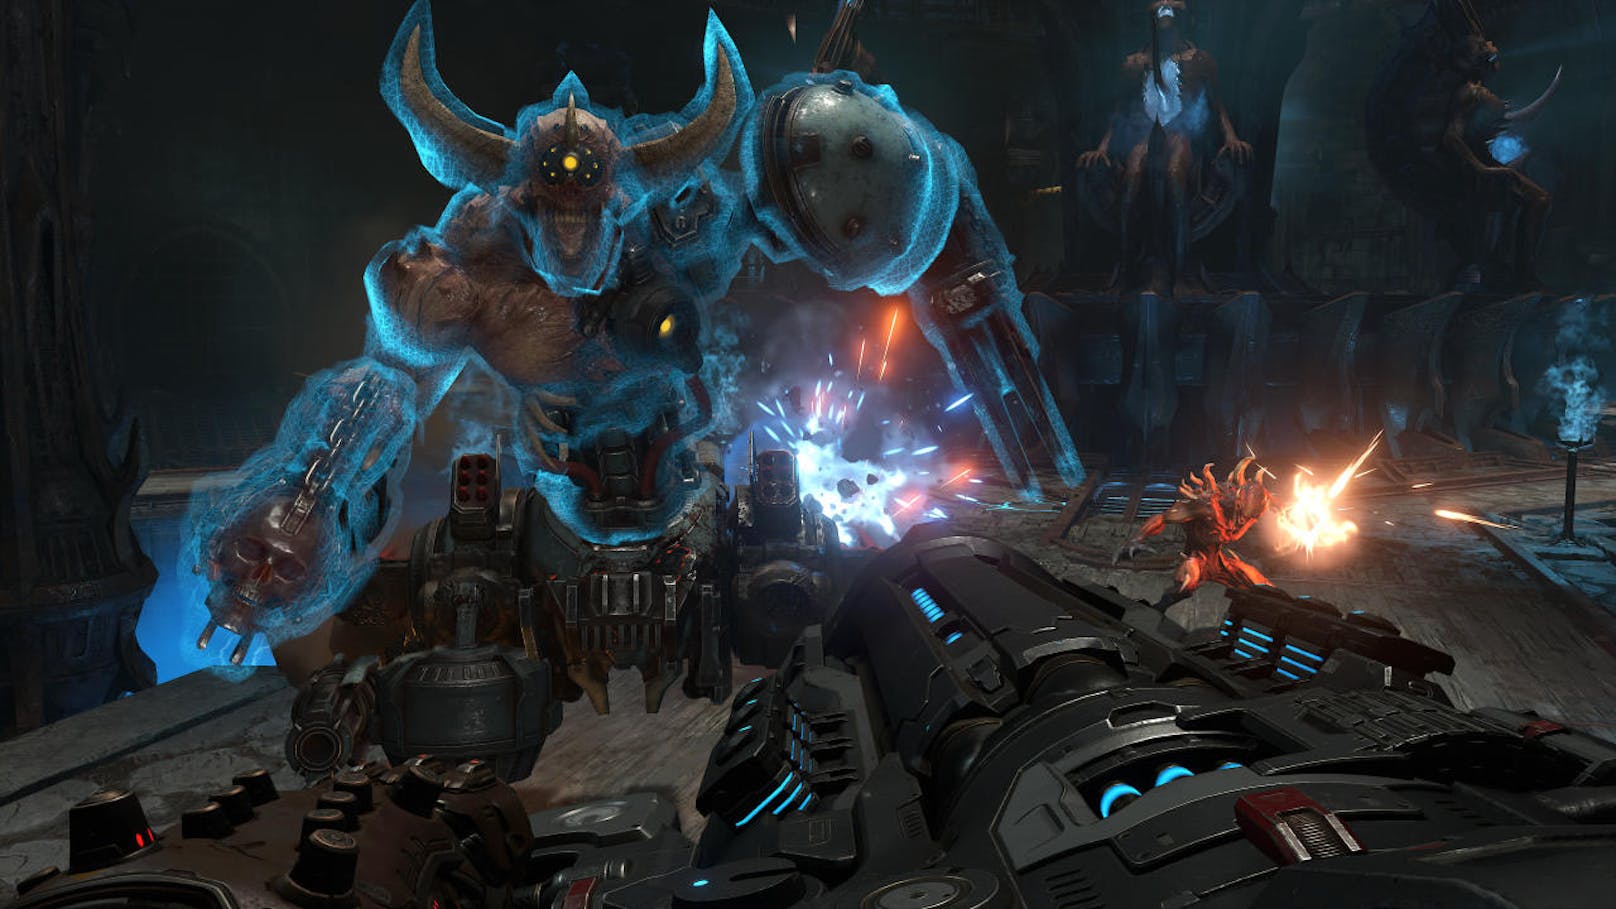 Ebenfalls neue Elemente gibt es bei der Steuerung: Der Doom Slayer kann nun doppelt ausweichen und doppelt springen. Ersteres ermöglicht ein viel besseres Ausweichen von feindlichen Angriffen, Zweiters kommt der Levelgestaltung zugute.